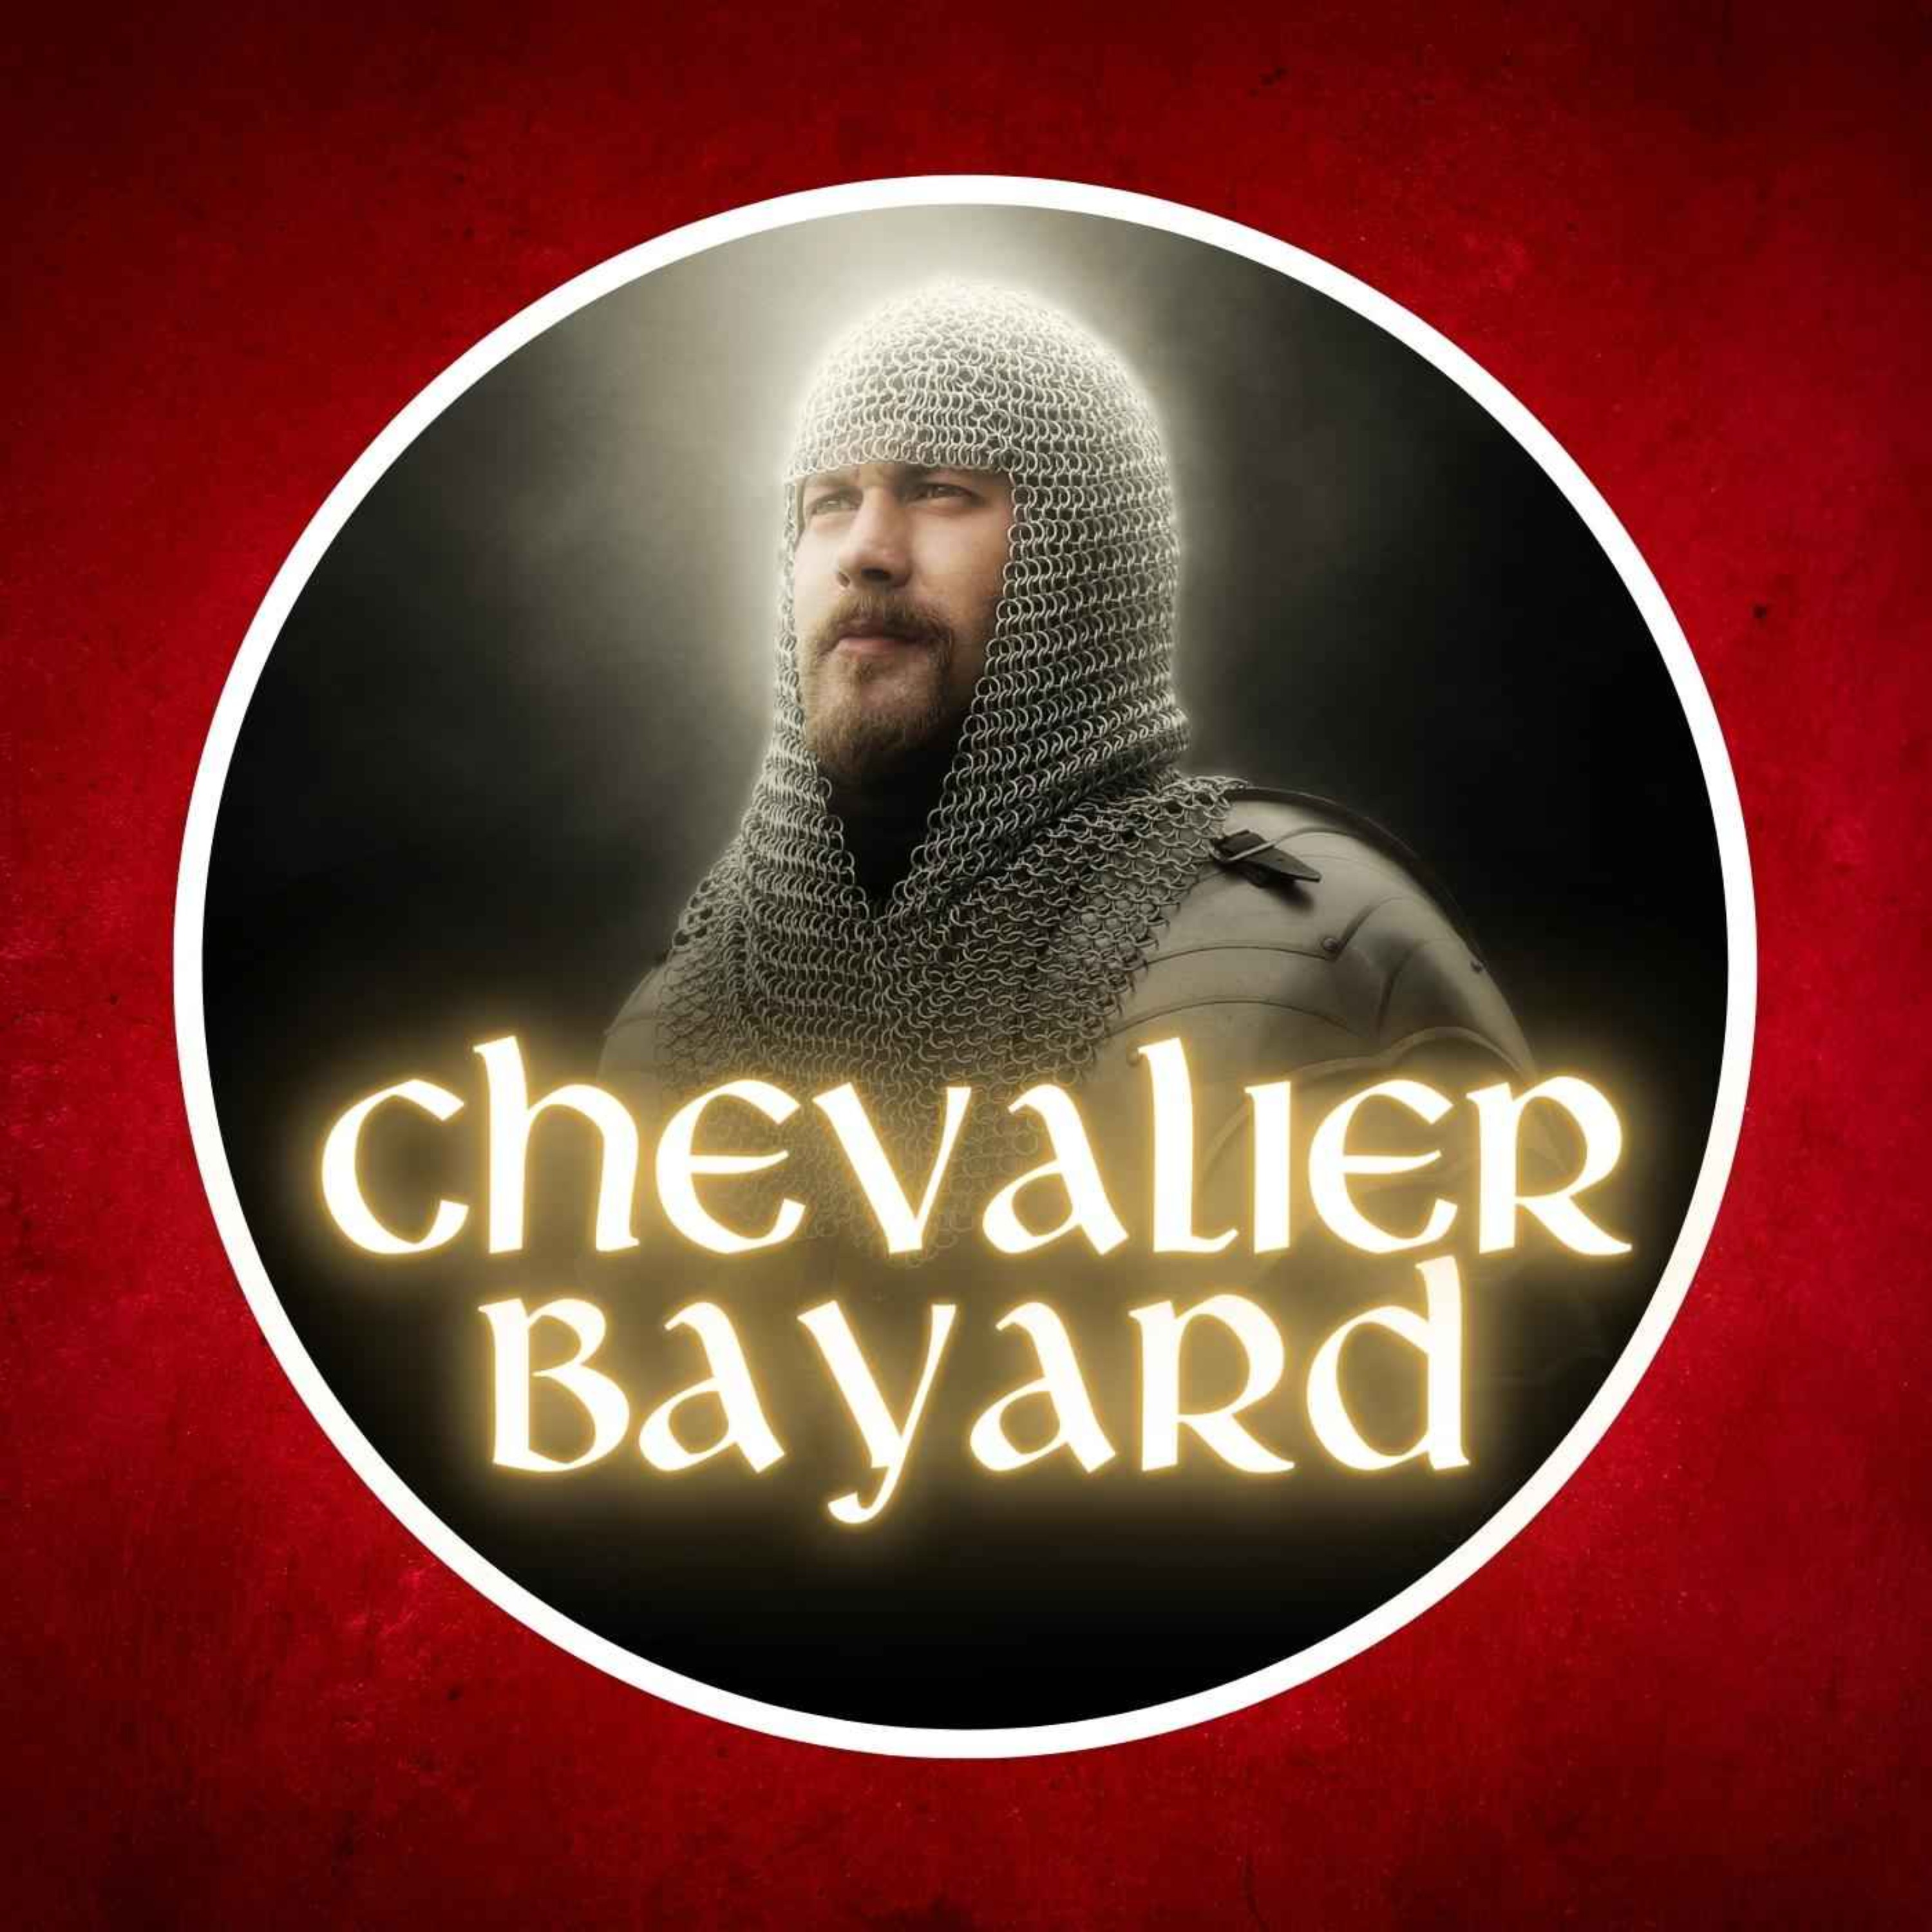 1524 : L’héroïque destin du Chevalier Bayard, sans peur et sans reproche